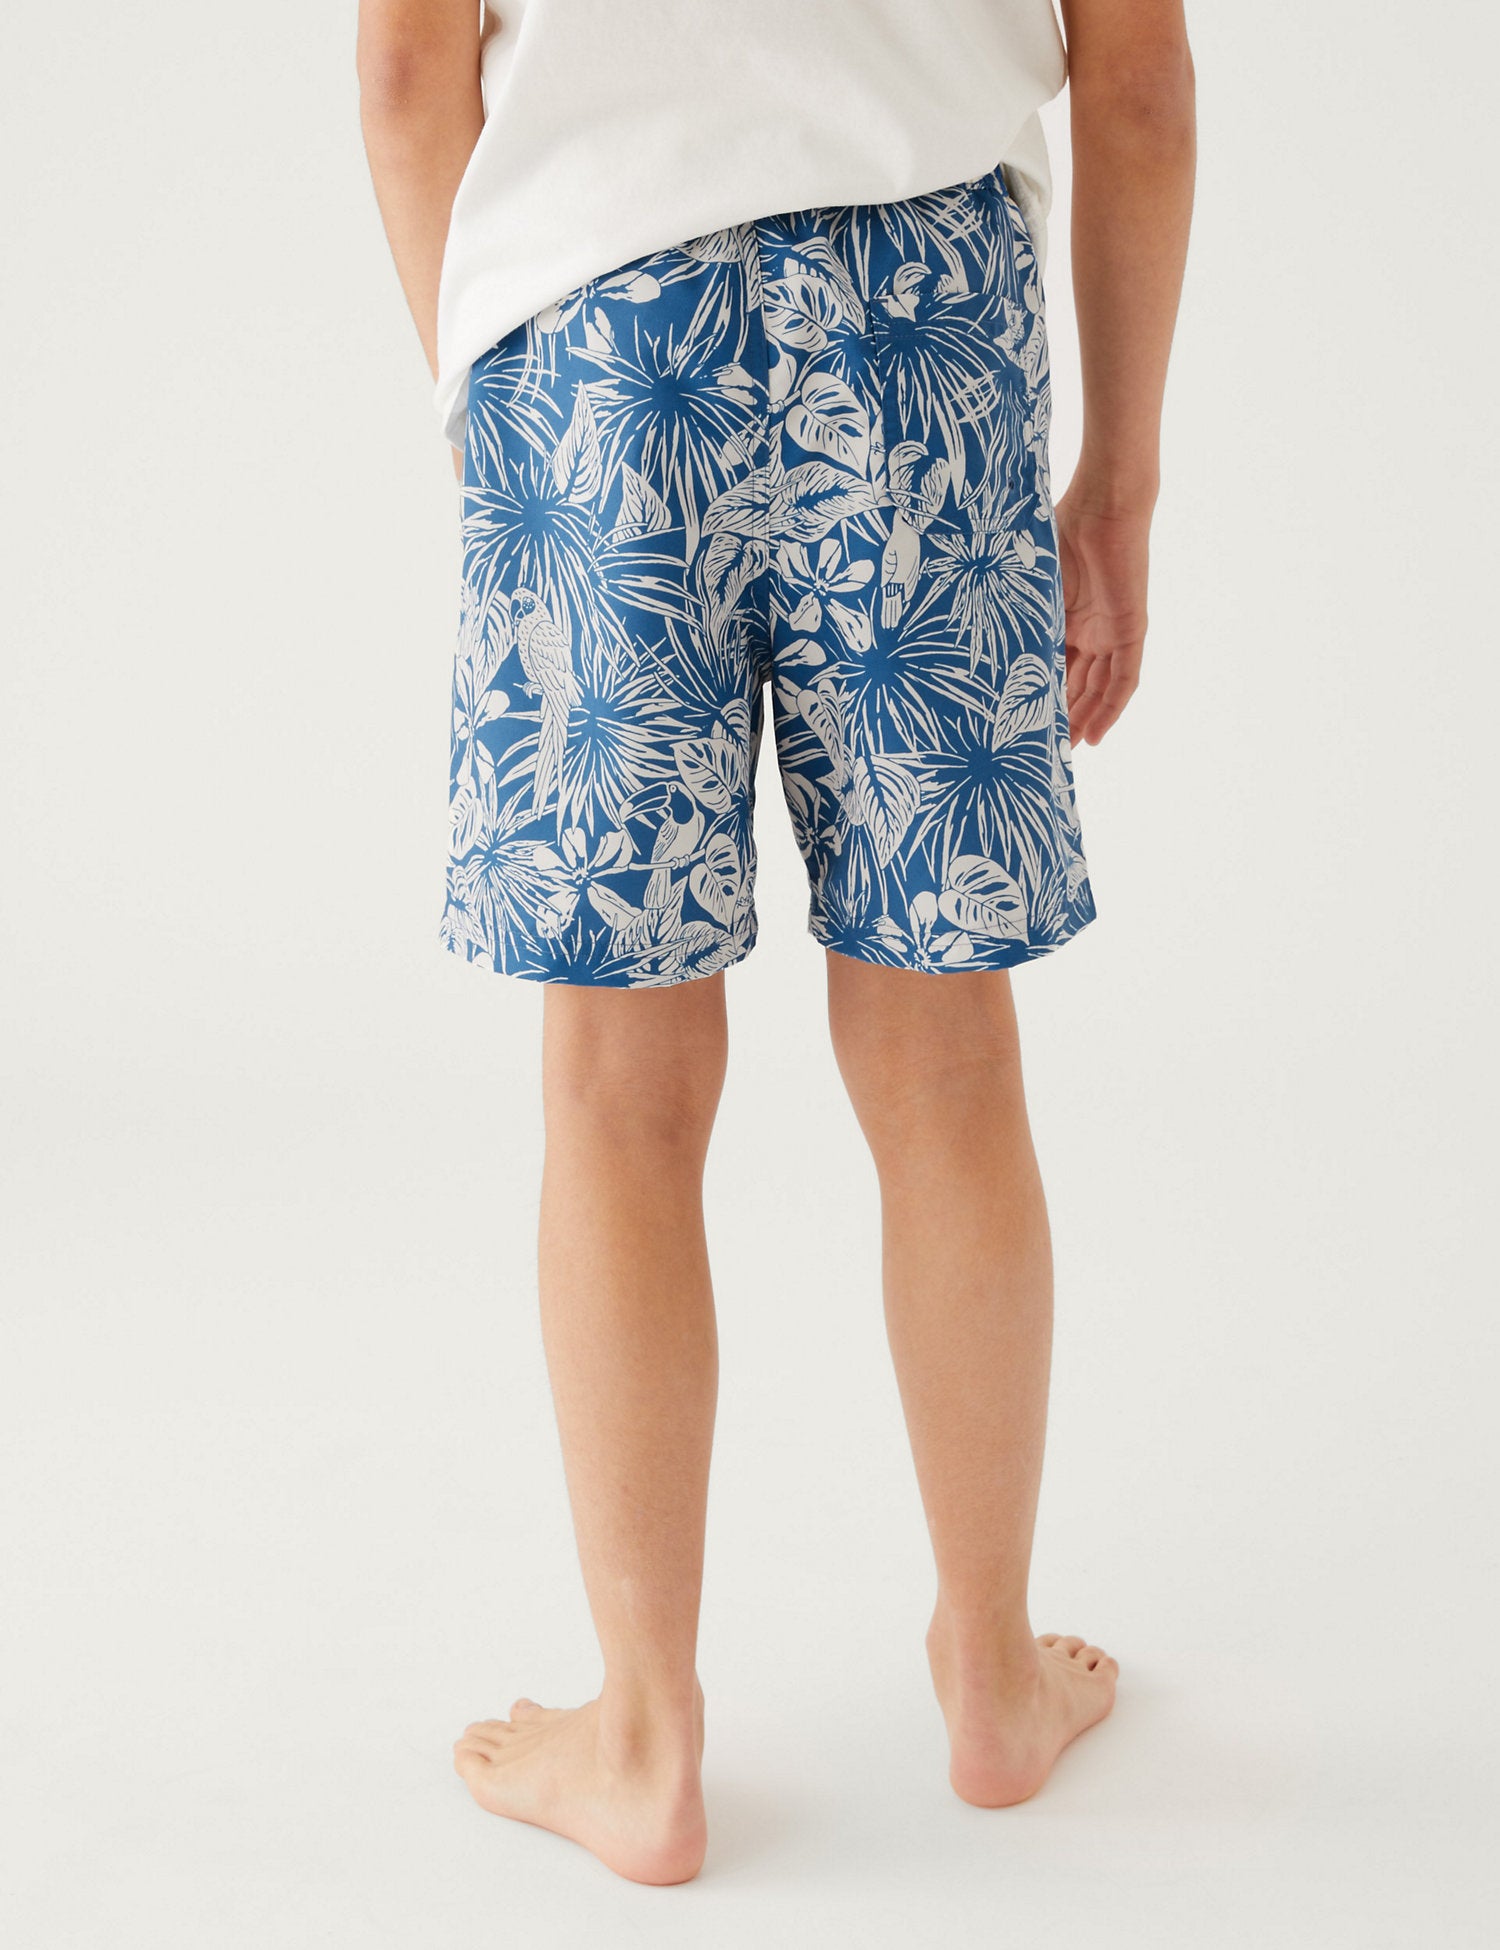 Mini Me Tropical Print Swim Shorts